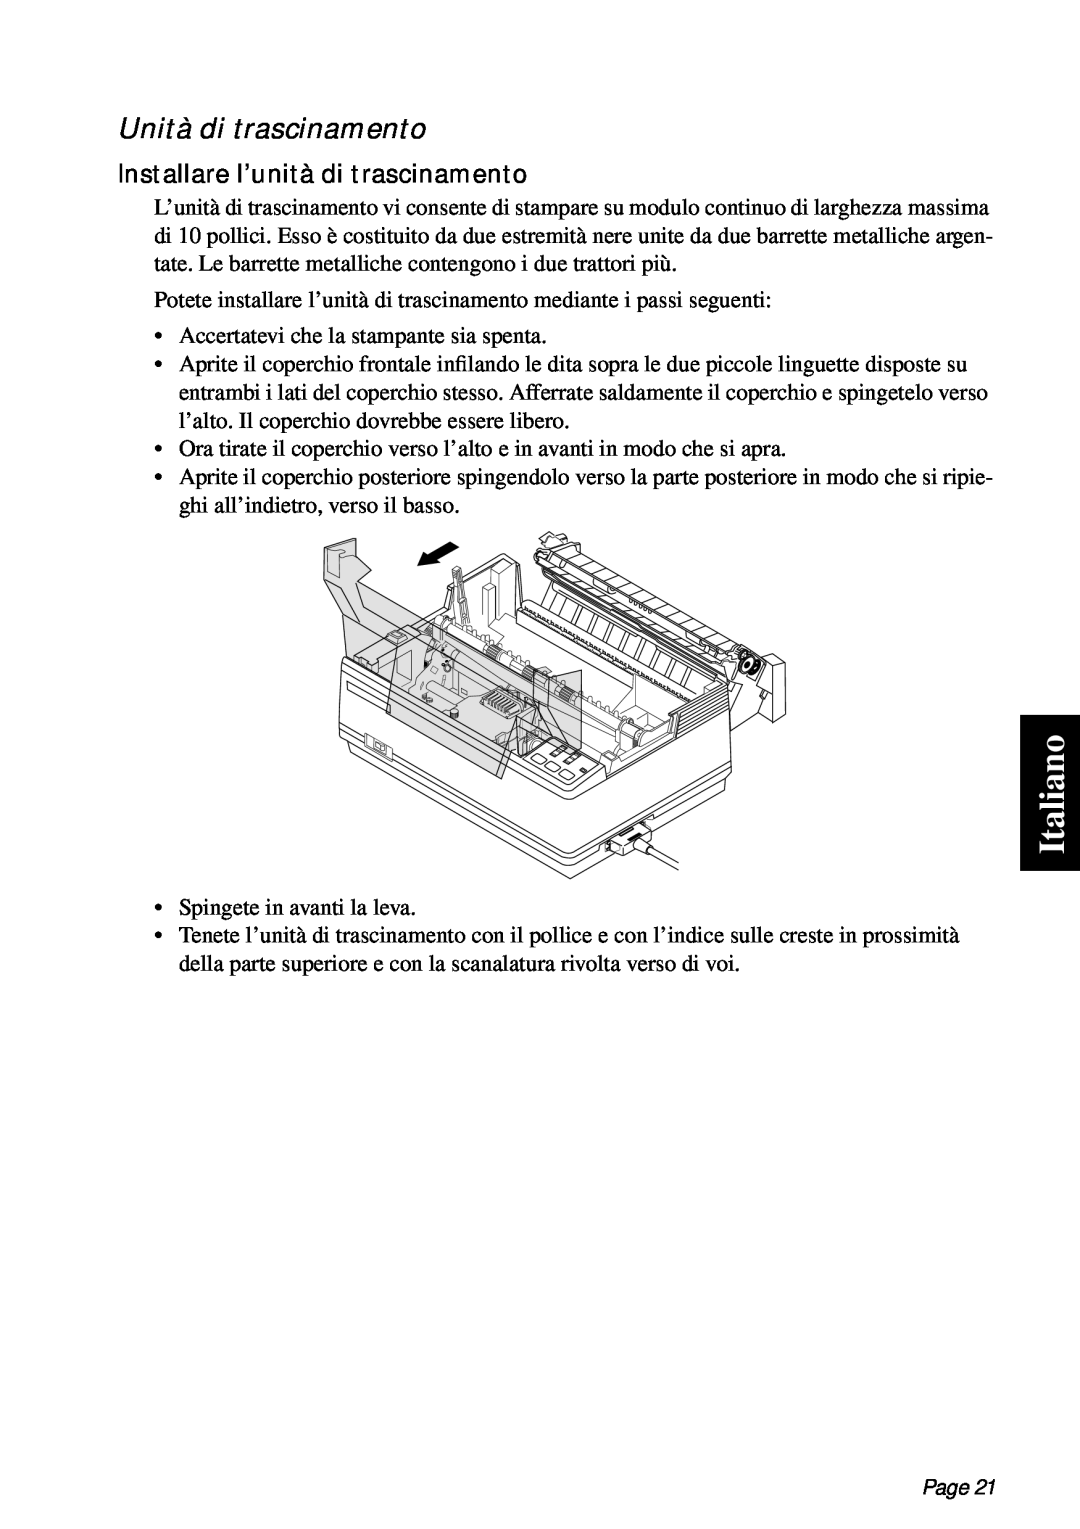 Star Micronics PT-10Q user manual Italiano, Unità di trascinamento, Installare l’unità di trascinamento, Page 